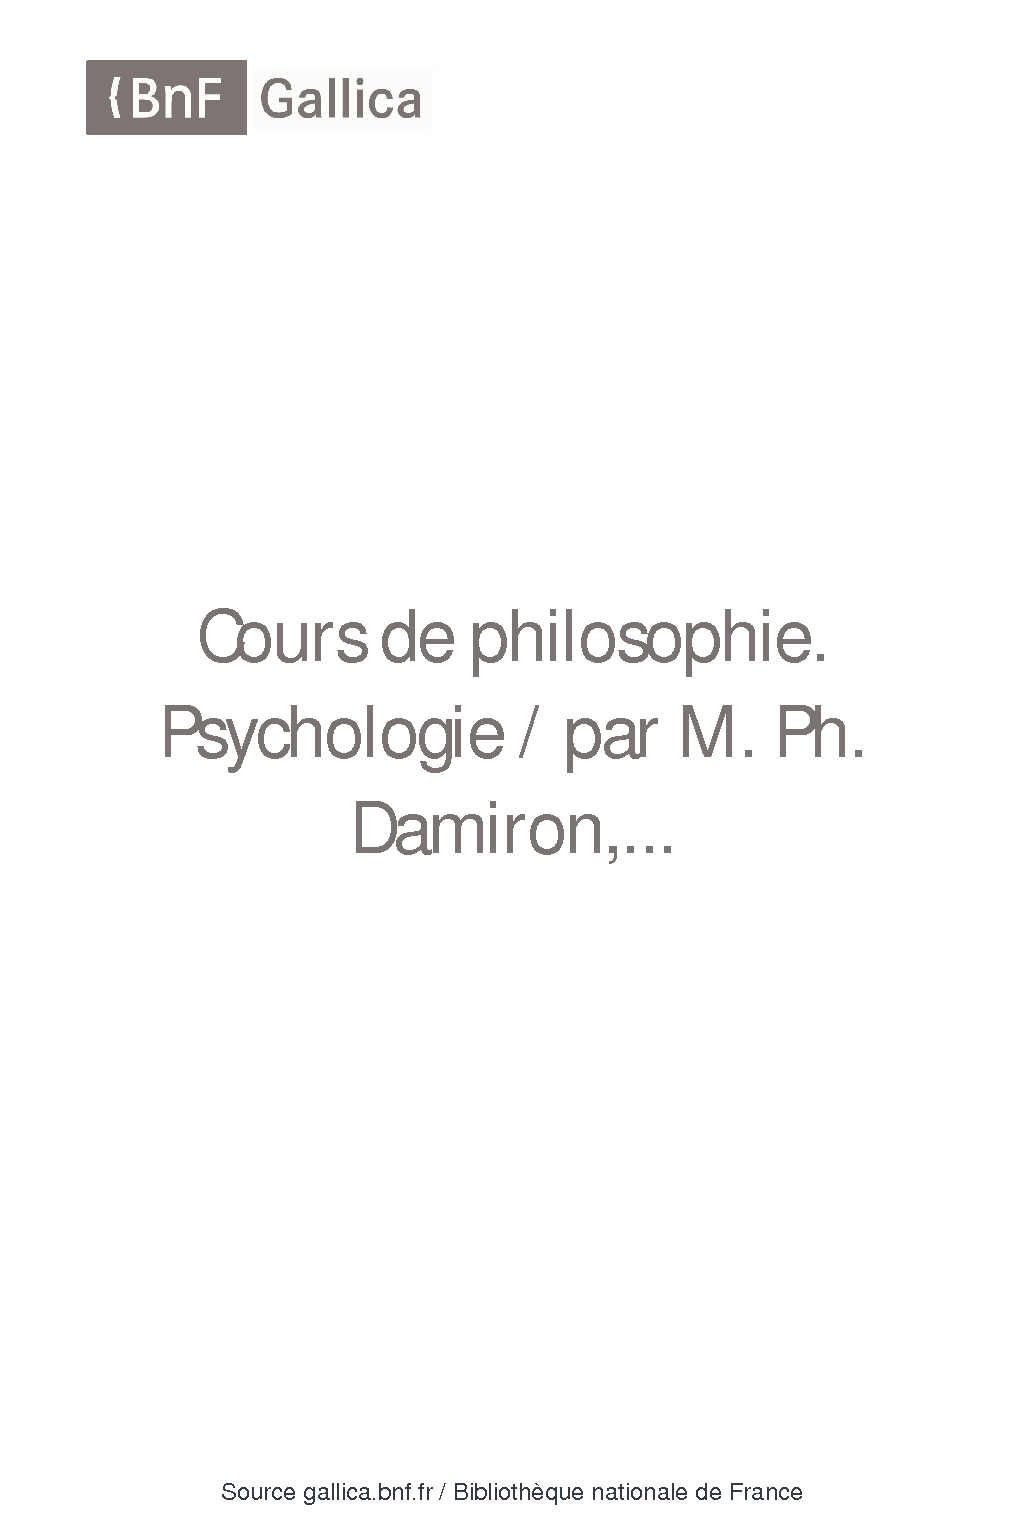 Cours de philosophie / par M Ph Damiron